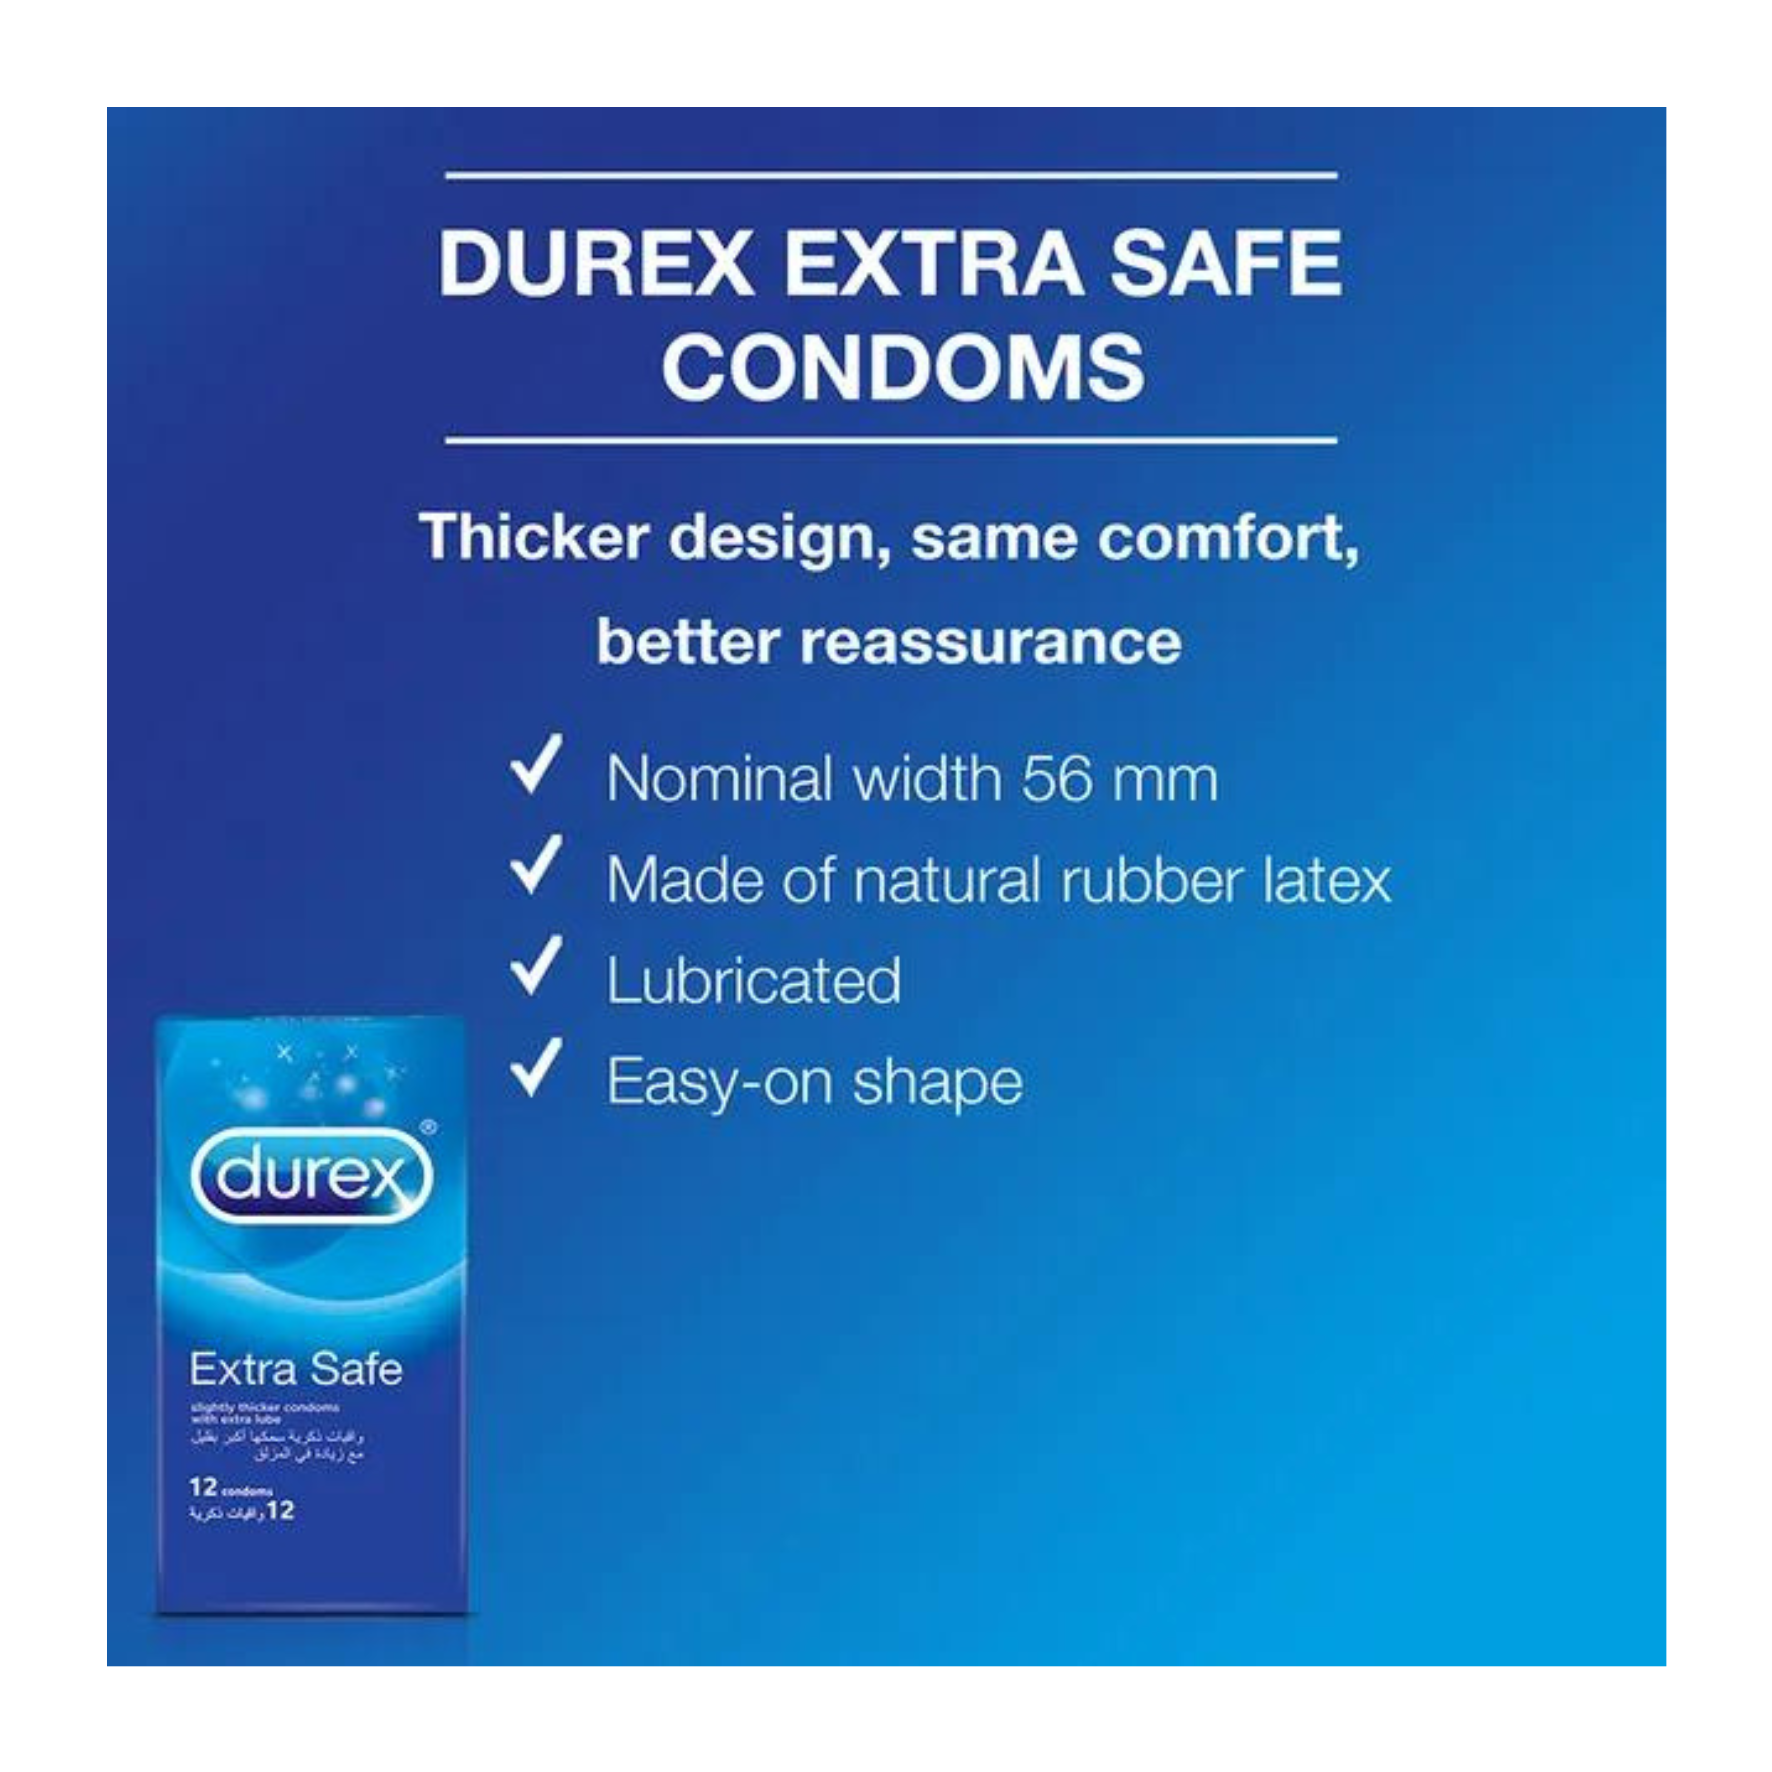 PREZERVATYVAI SUTEIKIANTYS MAKSIMALIĄ APSAUGĄ "DUREX EXTRA SAFE" - 3 VNT.  
"Durex Extra Safe" tai  skaidrūs ir lubrikuoti  prezervatyvai skirti  saugiai ir jausmingai patirčiai.  
  
Šie prezervatyvai sukurti iš šiek tiek storesnio latekso ir papildomai lubrikuoti, tad  seksas bus malonus bei saugus.  
Prieš užsidėdami prezervatyvą įsitikinkite, kad jūsų varpa neliečia partnerio lytinių organų srities – sperma iš varpos gali išeiti dar prieš pilną ejakuliaciją.   
*Atminkite, kad nė viena kontraceptinė priemonė nėra 100 % veiksminga nuo nėštumo, ŽIV ar lytiškai plintančių infekcijų.